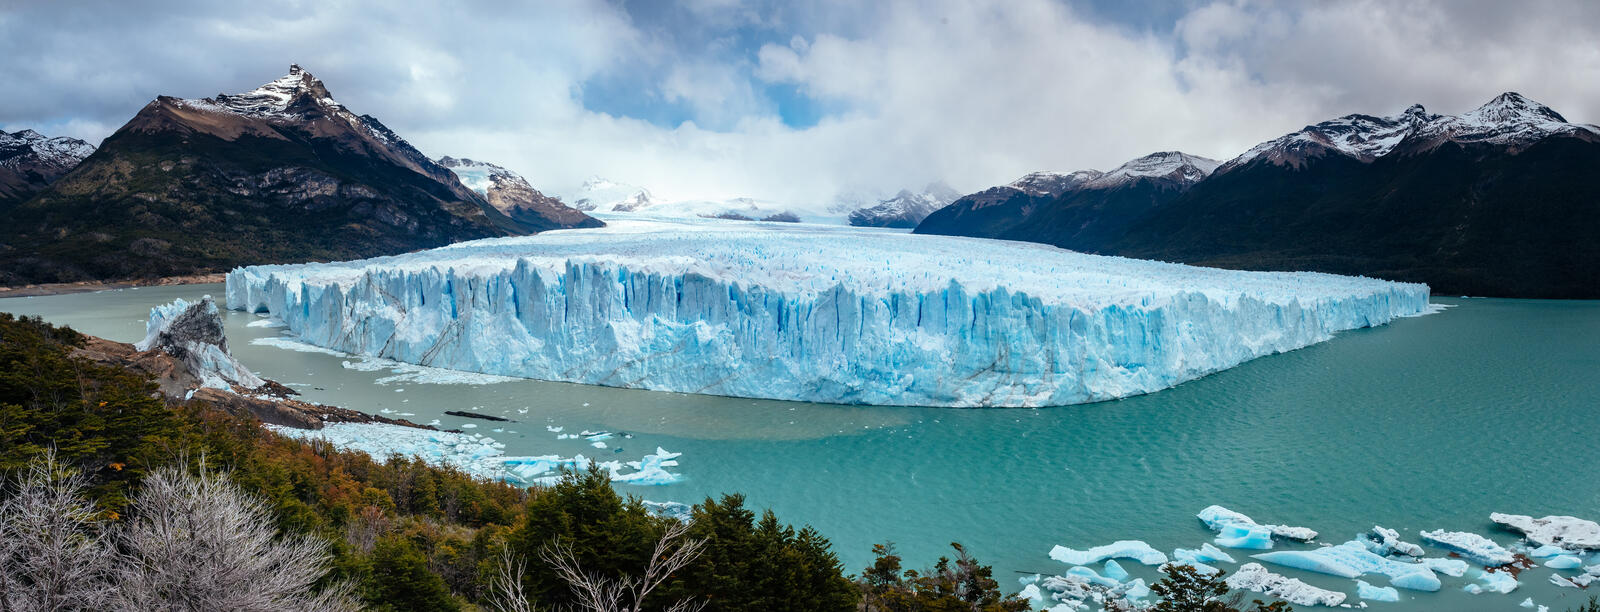 Wallpapers National Park Los Glaciares Patagonia Perito Moreno Glacier on the desktop